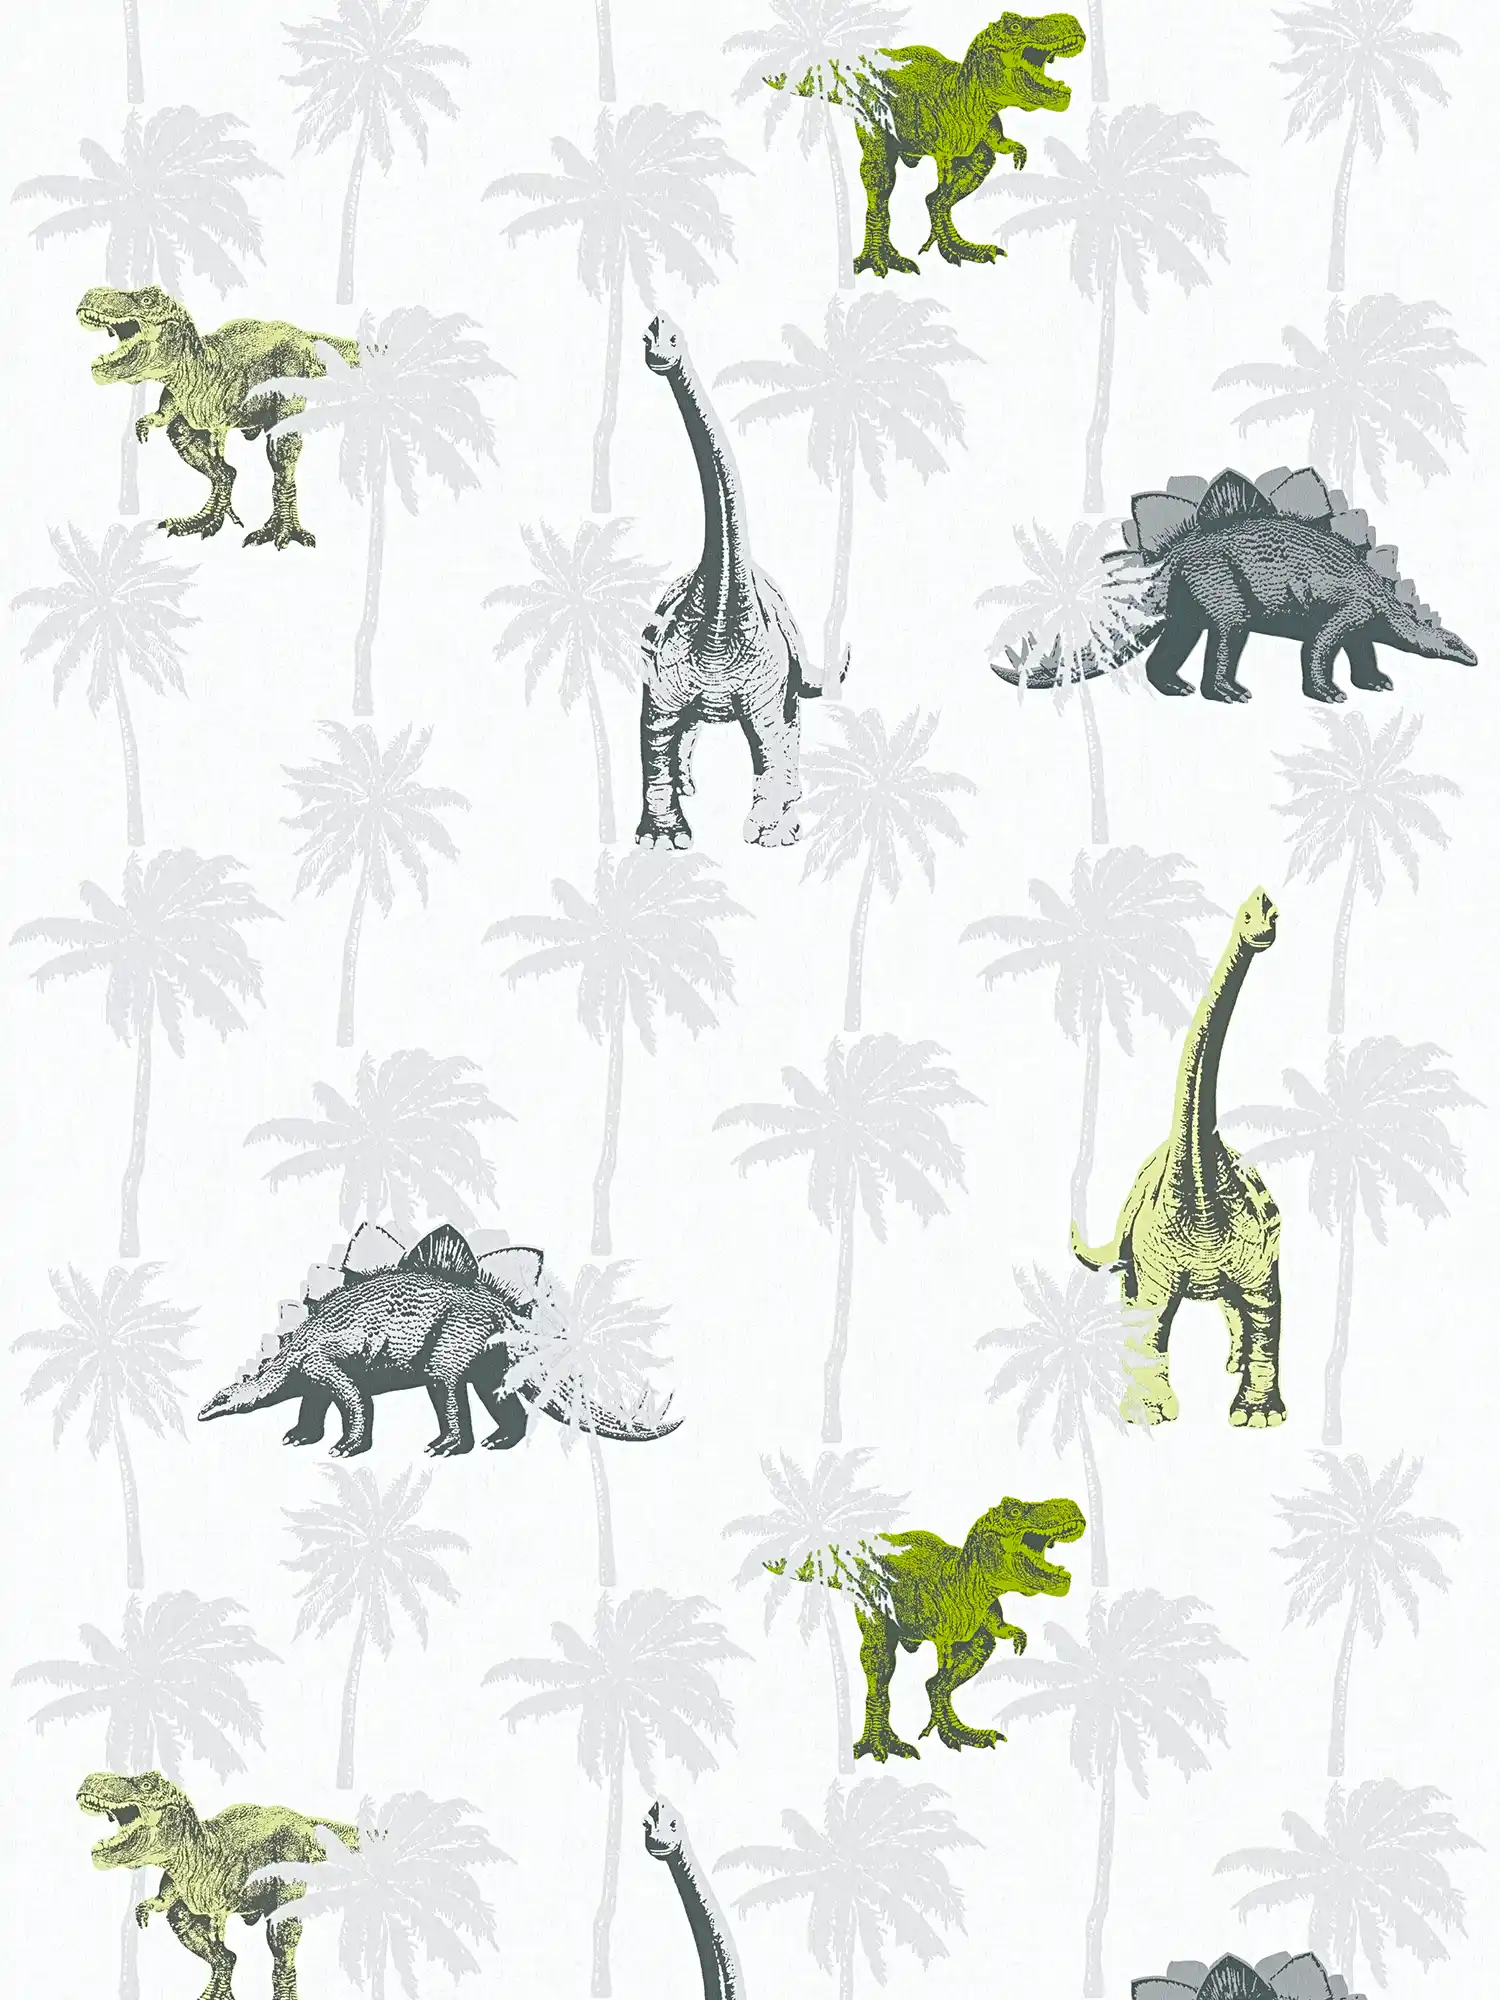         Kids room wallpaper dinosaur for boys - grey, green
    